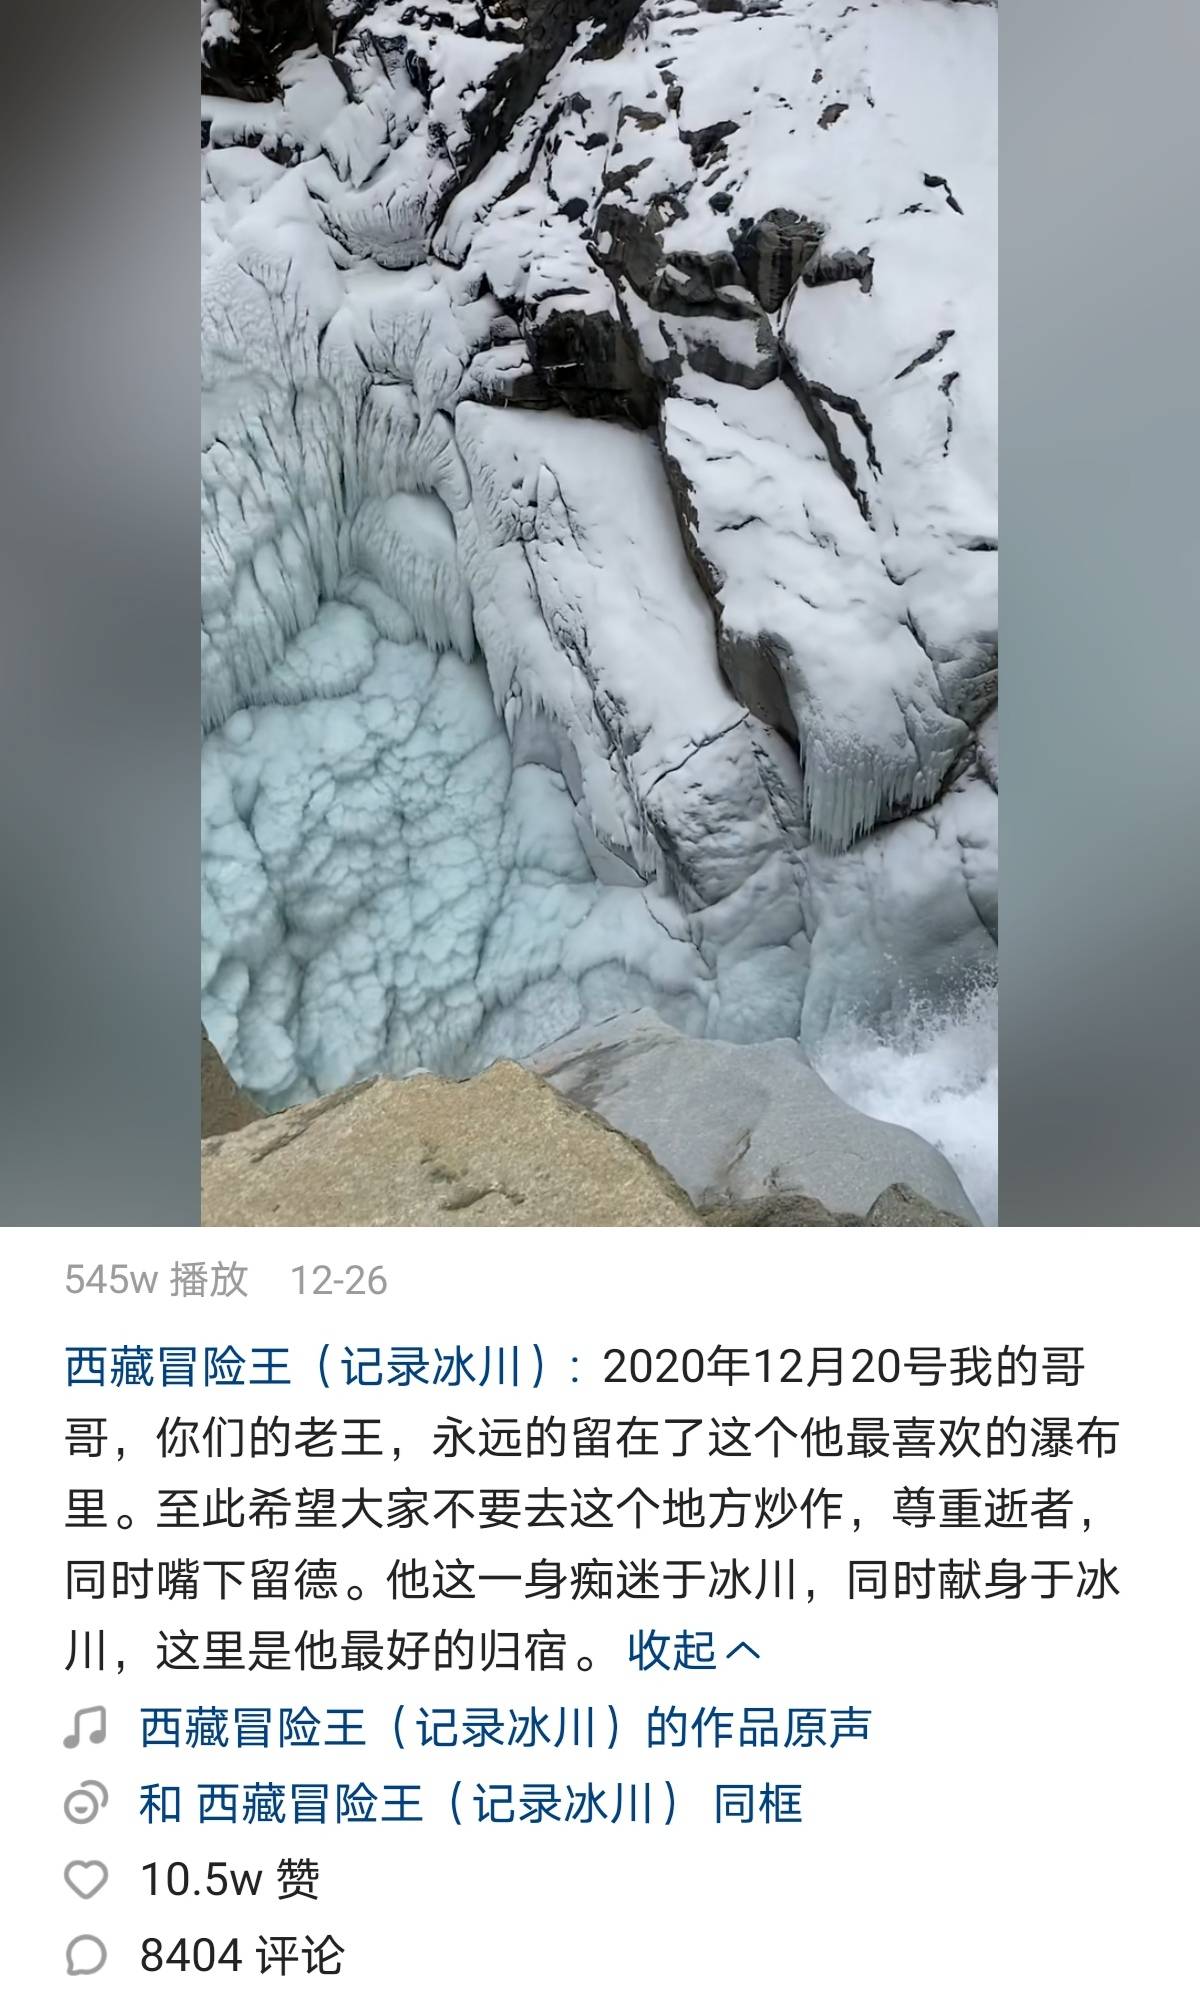 账号发布一段冰川瀑布的视频,并配文 2020 年 12 月 20 号,我的哥哥